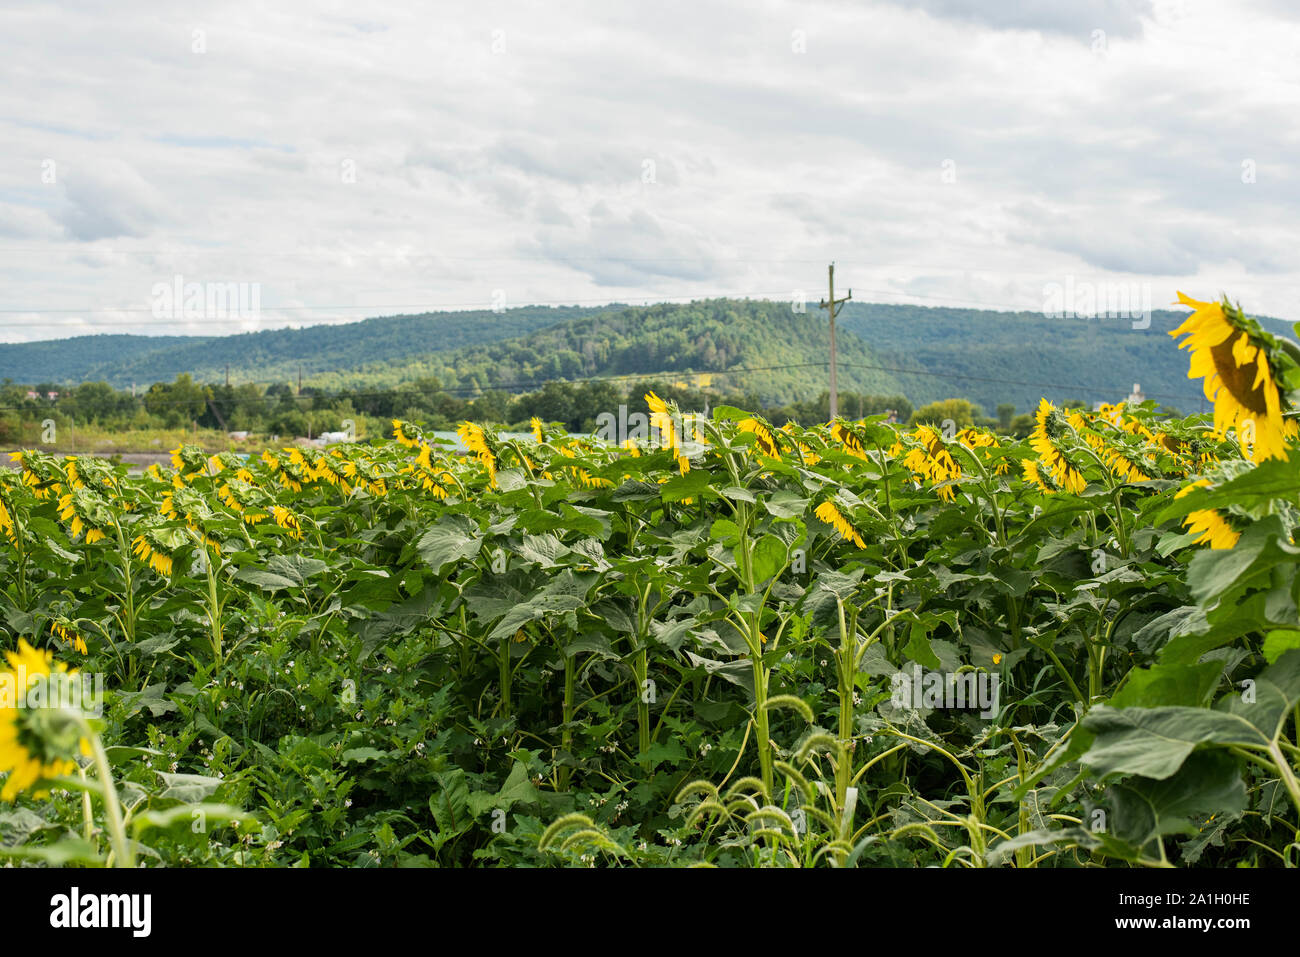 La floraison des tournesols vers le soleil dans un champ dans une région rurale de Pennsylvanie, USA Banque D'Images